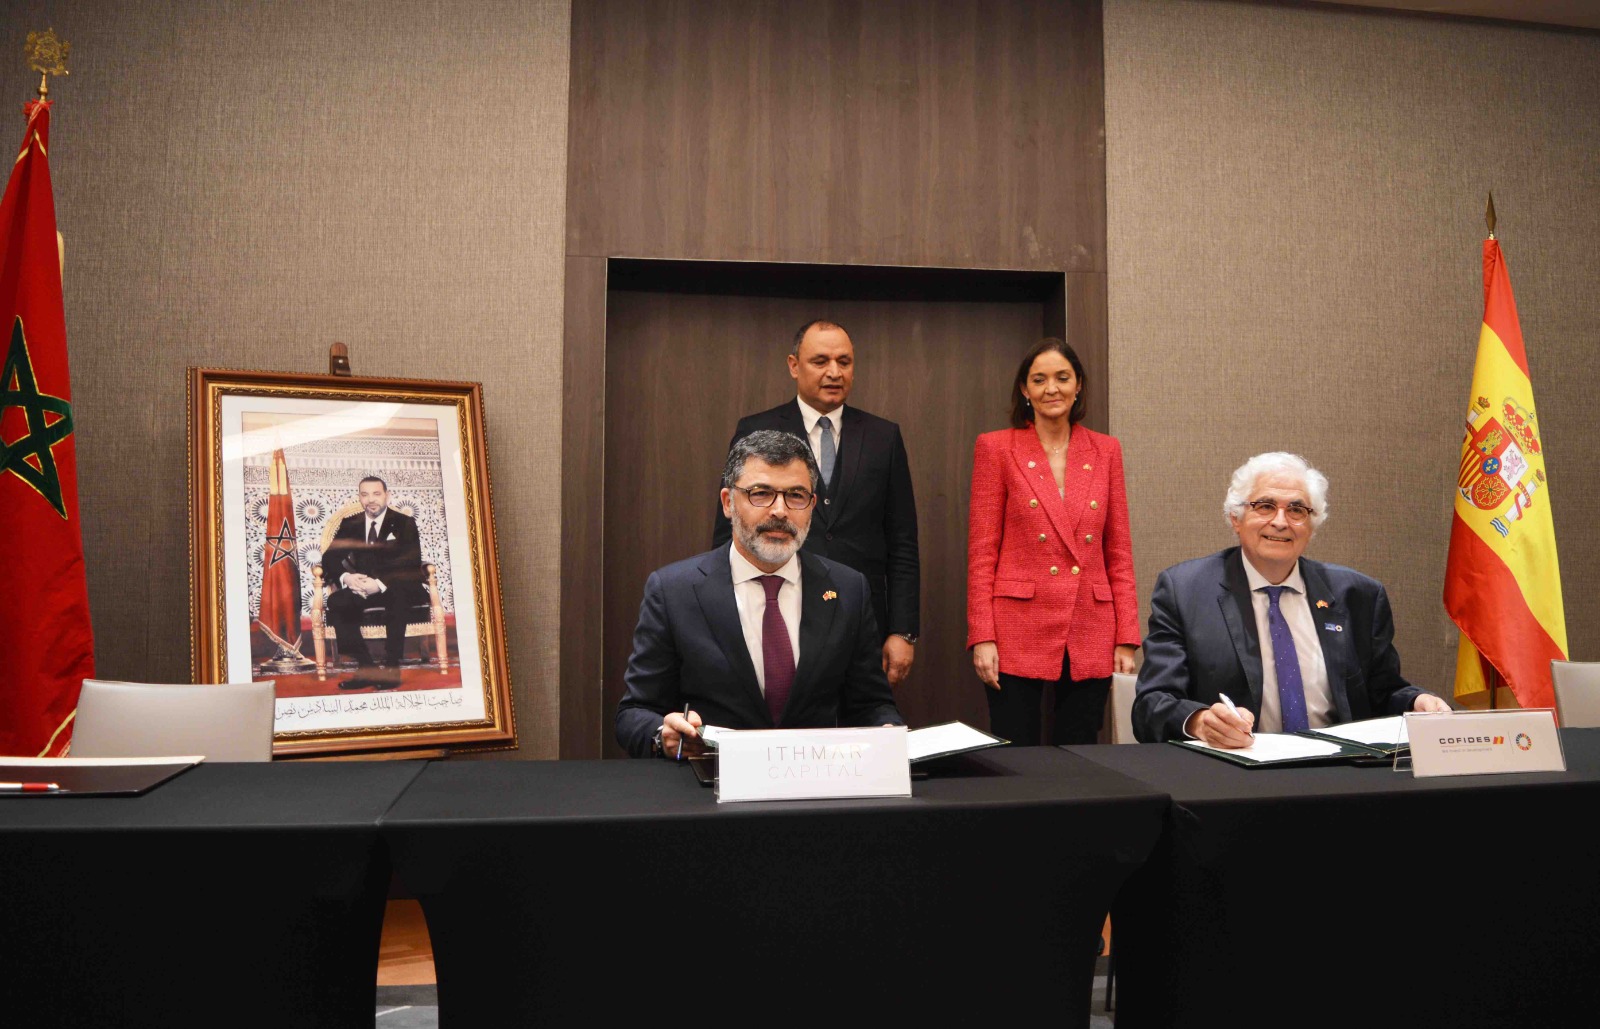 Ithmar Capital et Cofides signent une déclaration conjointe pour renforcer les relations bilatérales